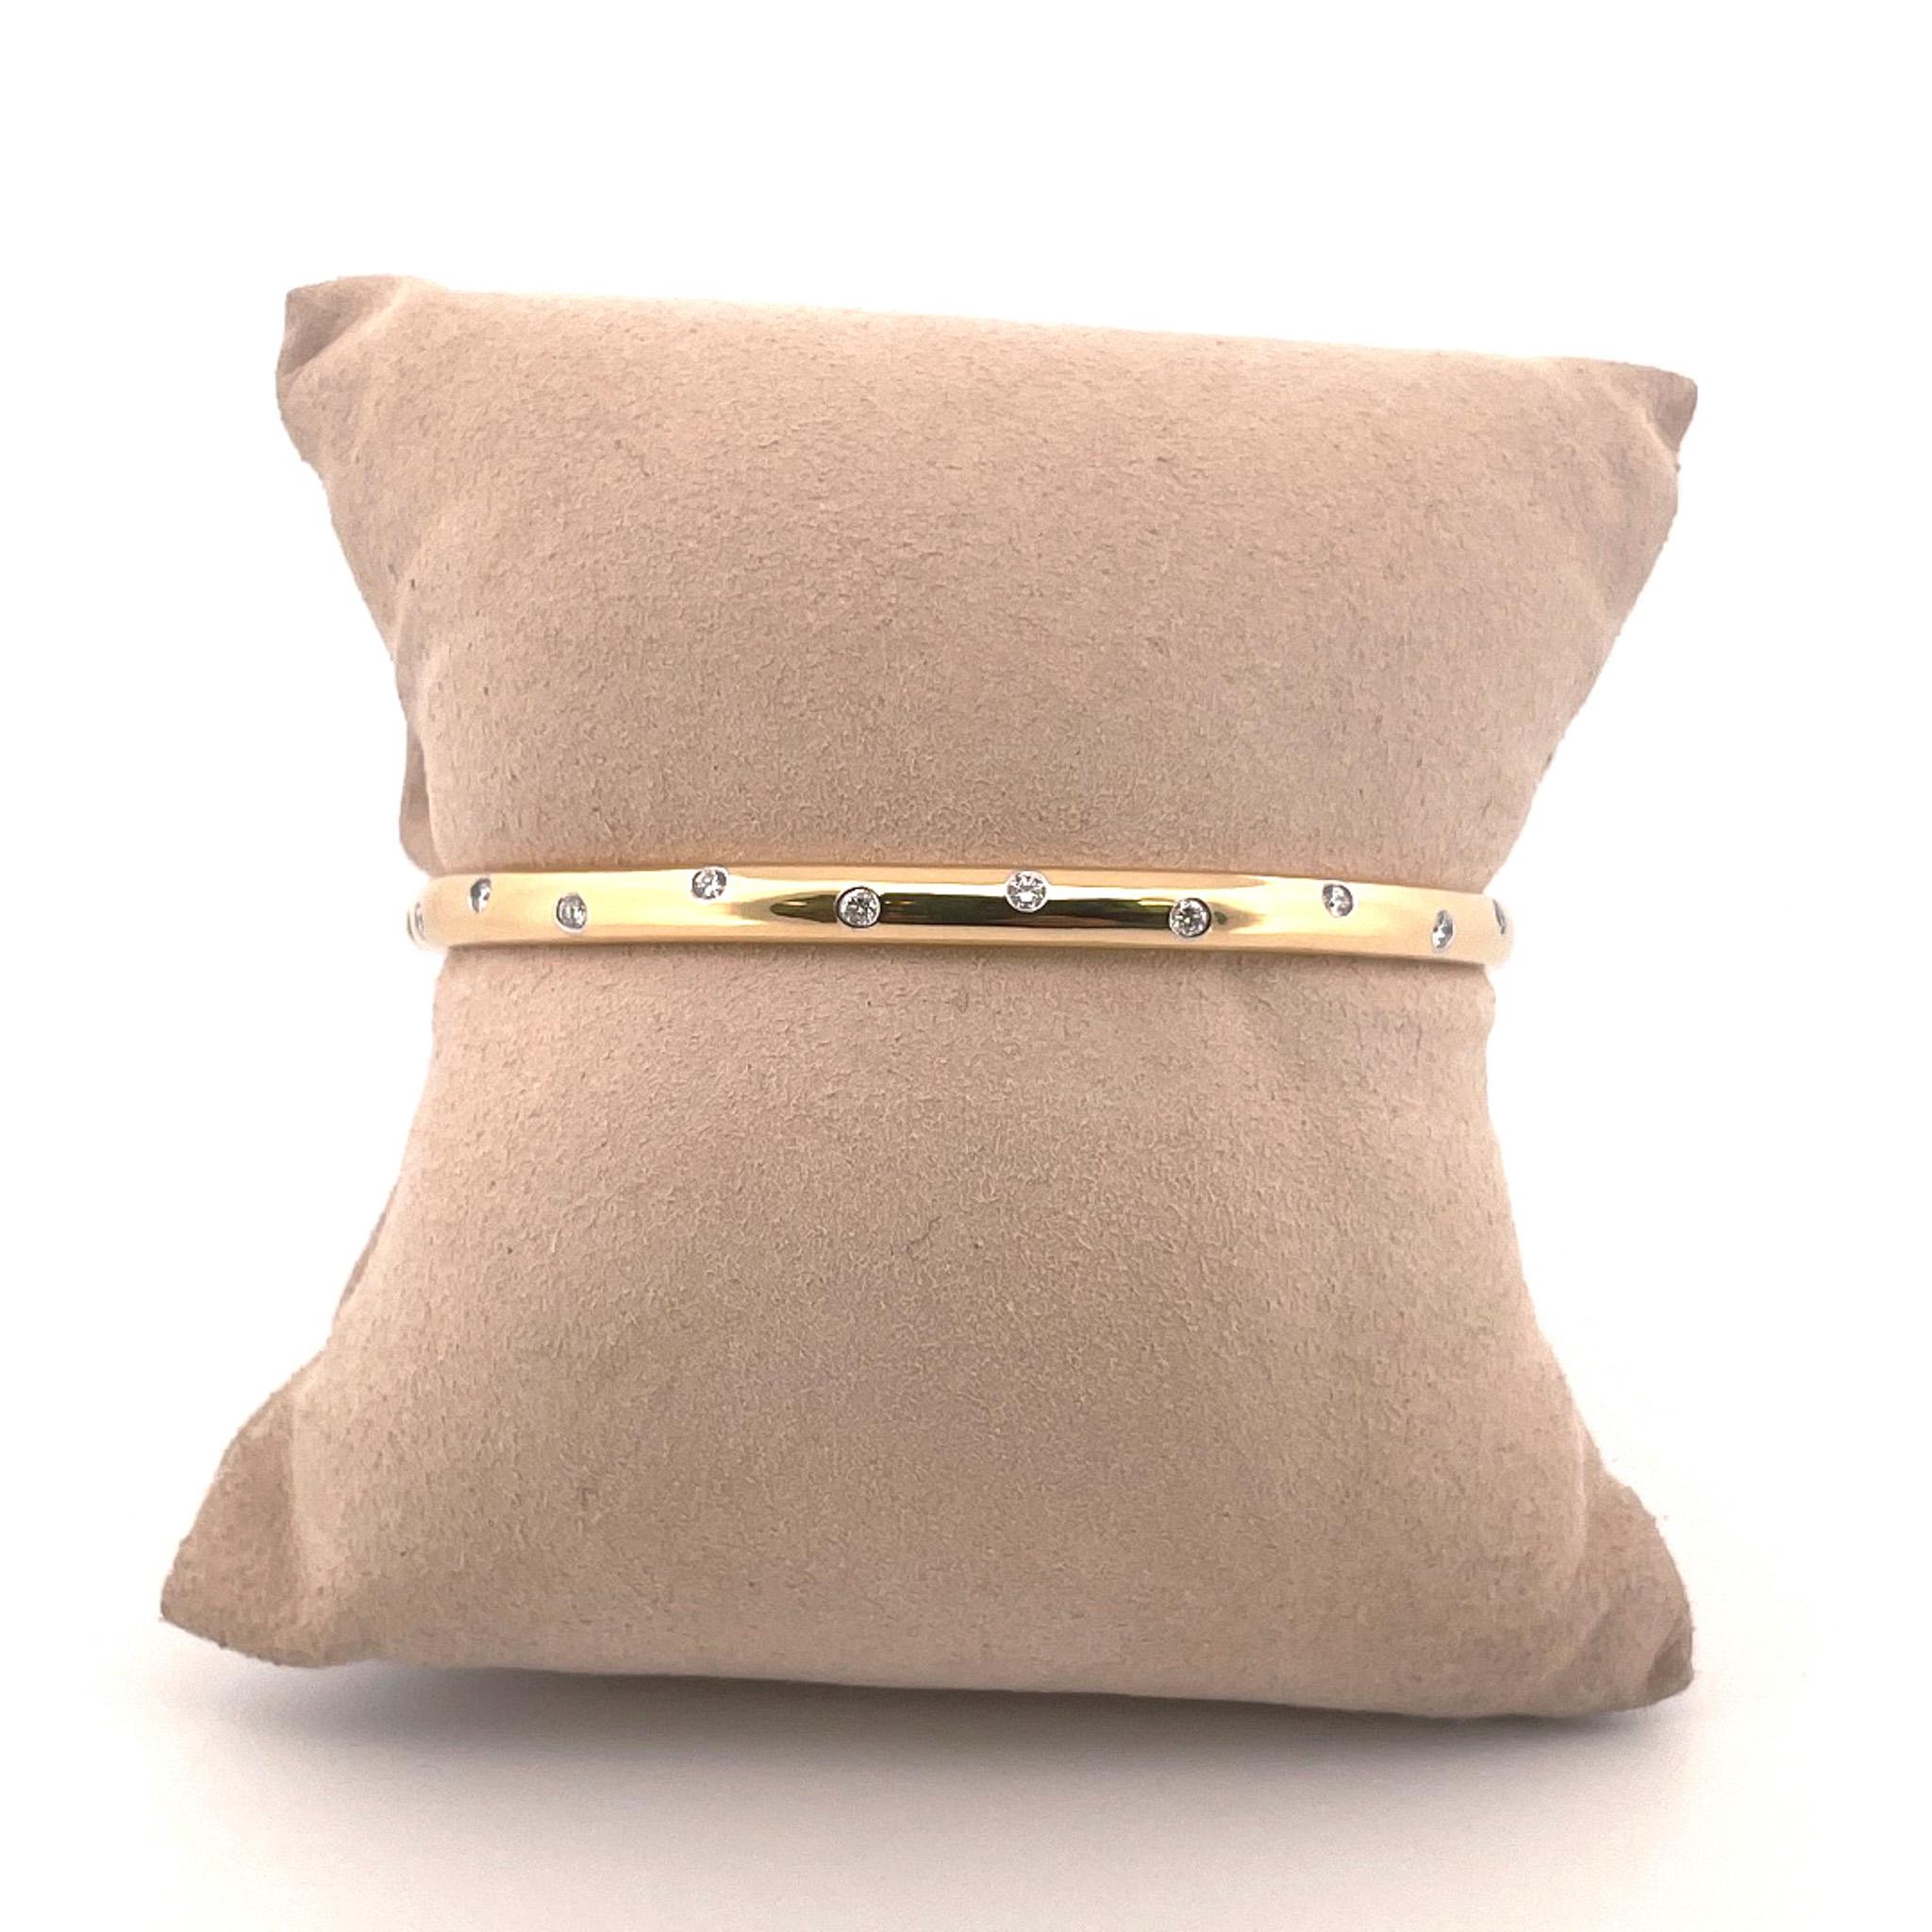 Du créateur Tiffany & Co., vers les années 1990, bracelet Etoile en or jaune 18 carats et diamants. Ce bracelet est orné de 10 diamants ronds de taille brillant en serti clos d'un poids total combiné de 0,50 carat. Ces diamants ont une couleur F-G